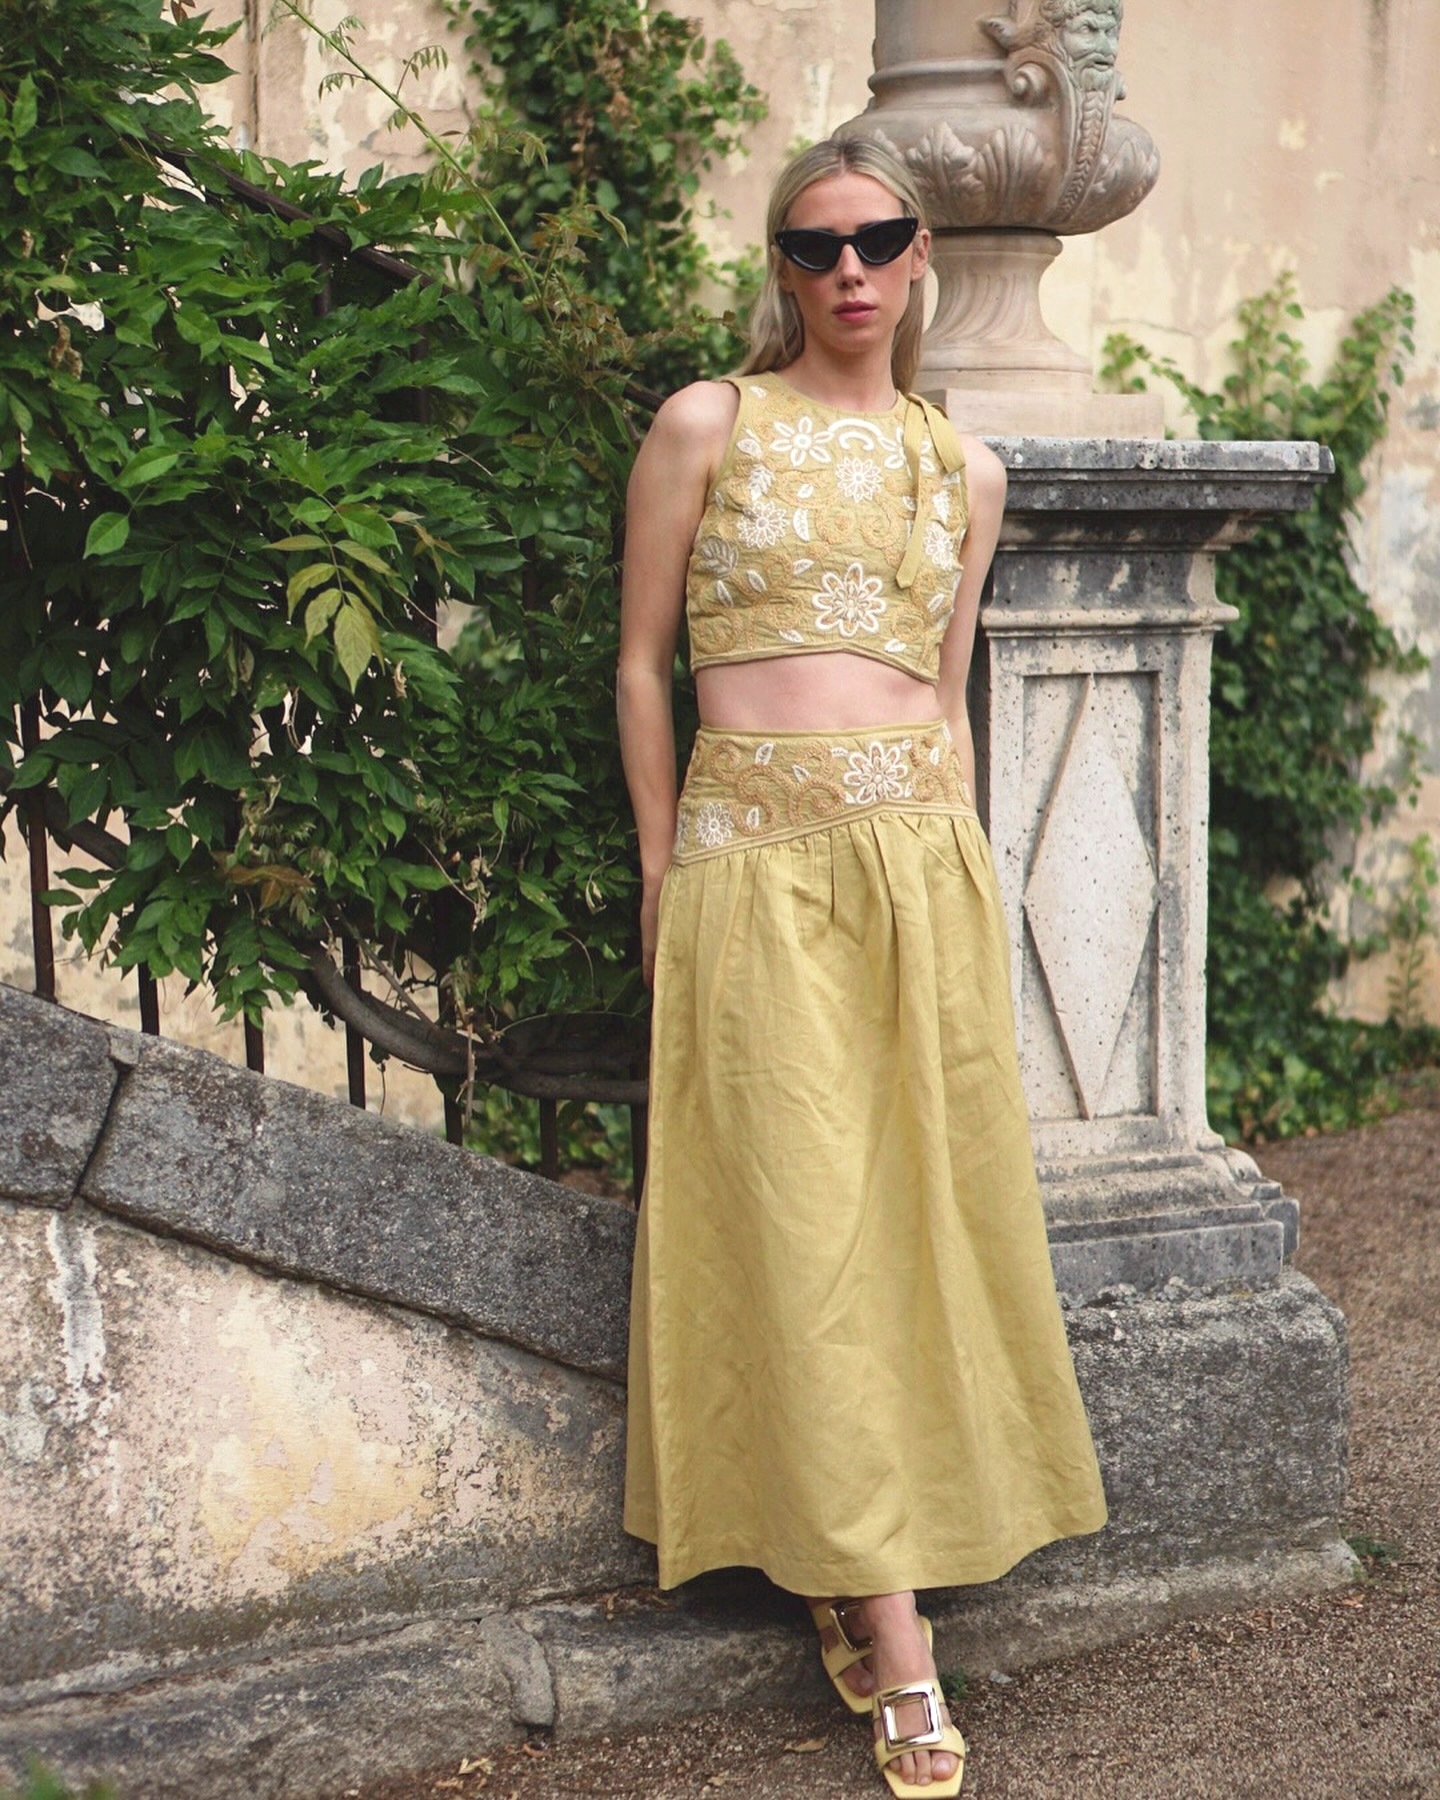 Как женщинам невысокого роста носить длинные юбки и платья летом: лайфхаки